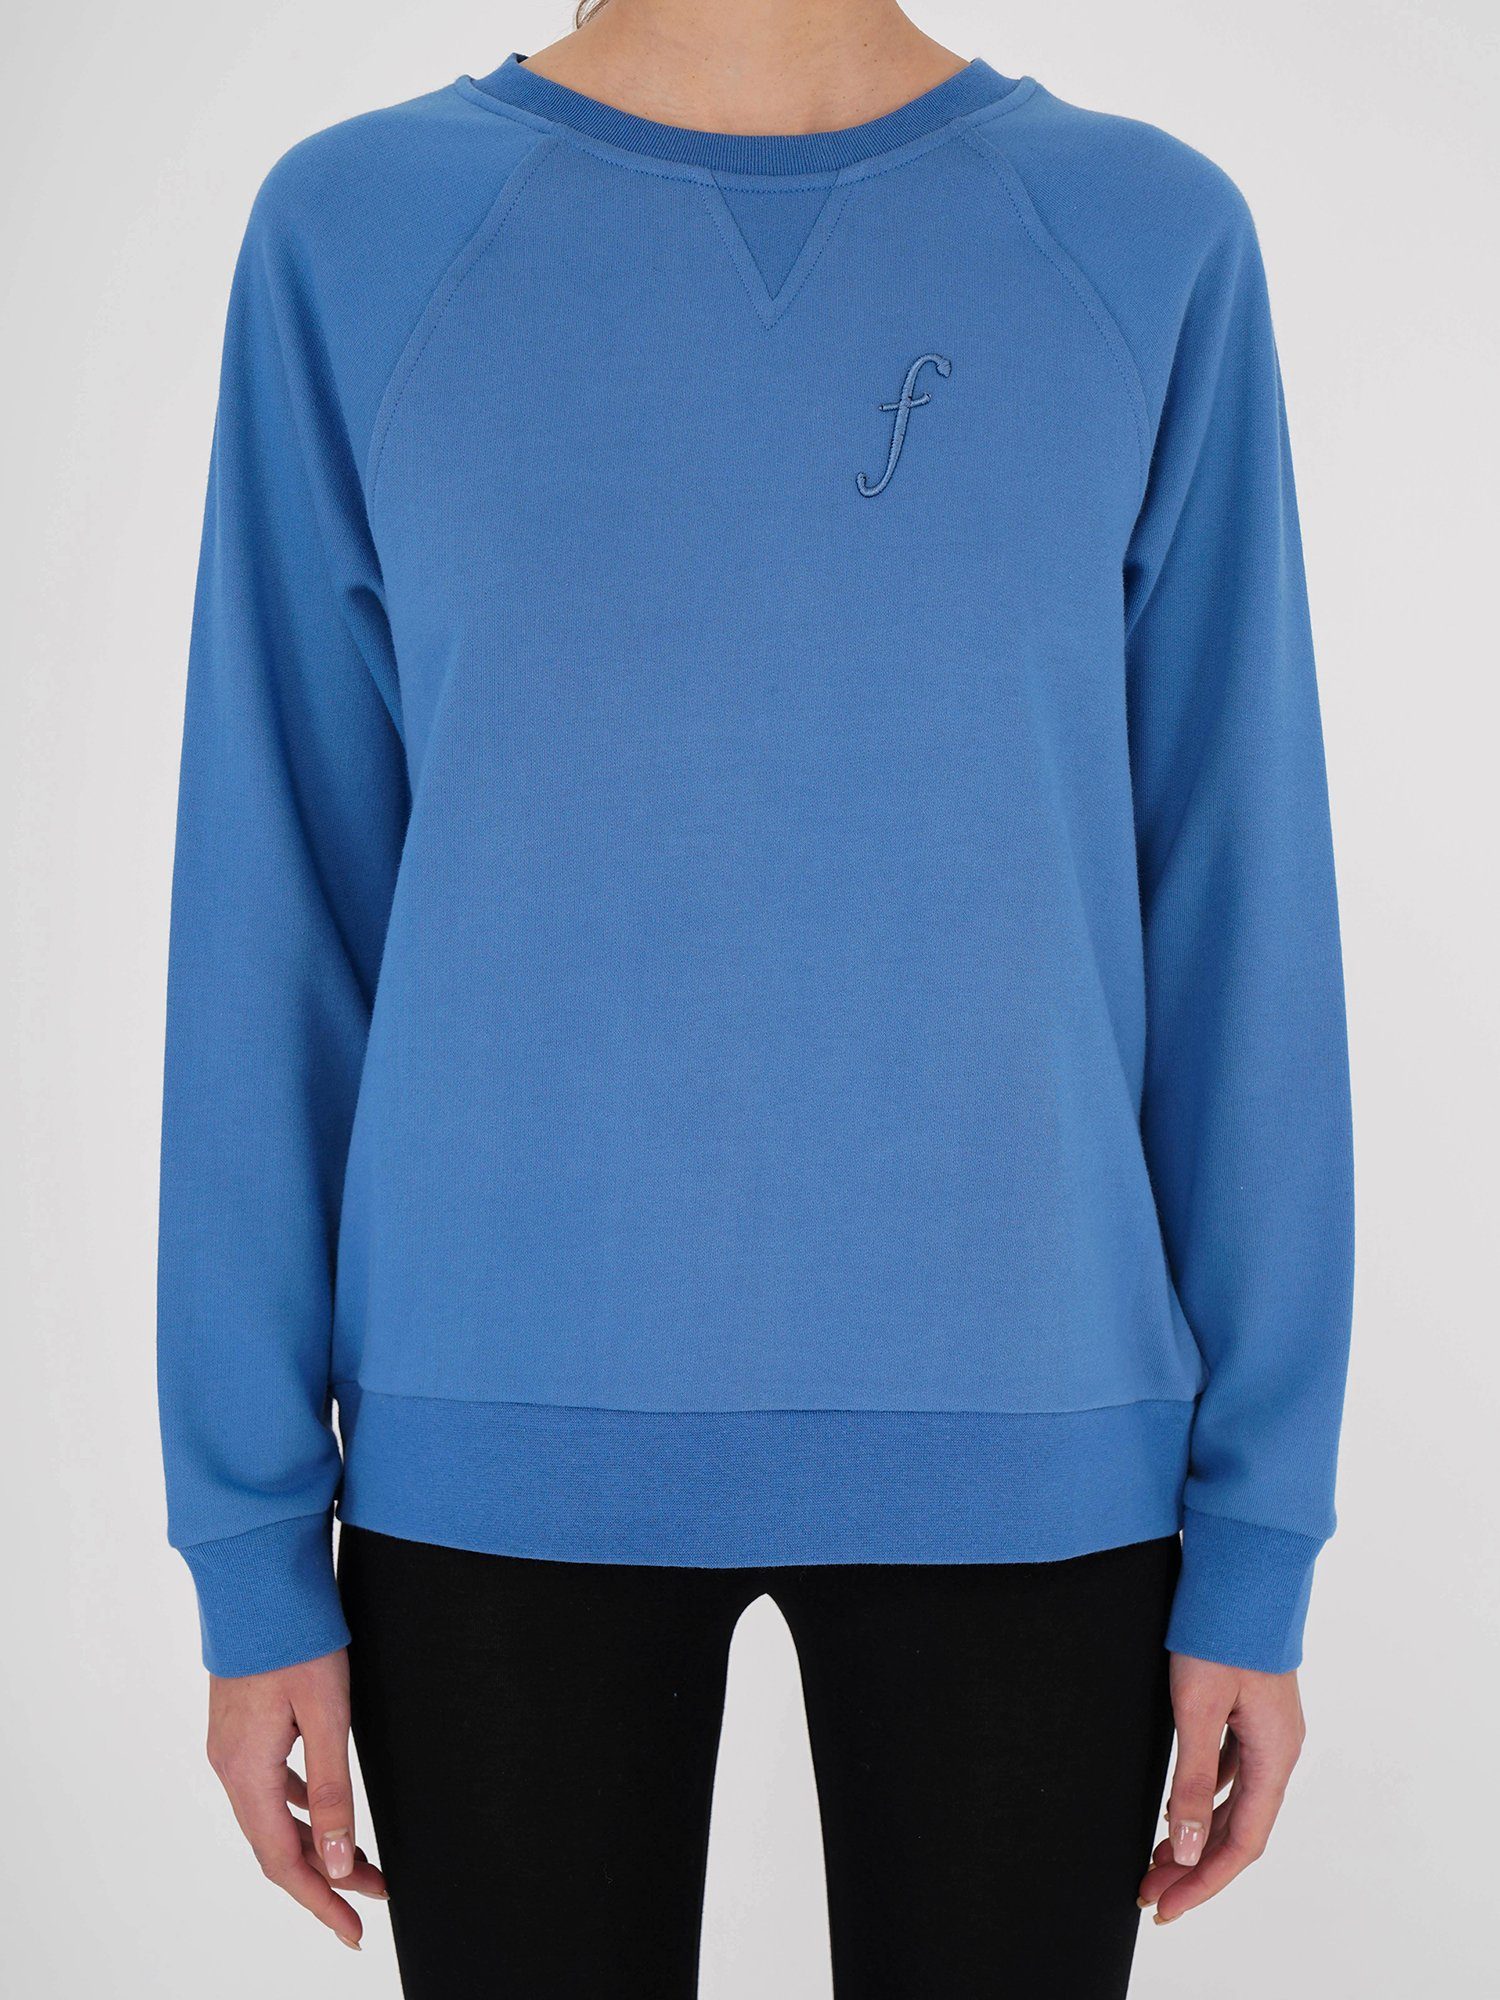 Freshlions Kurzweste Sweatshirt blau F Embroidery Freshlions